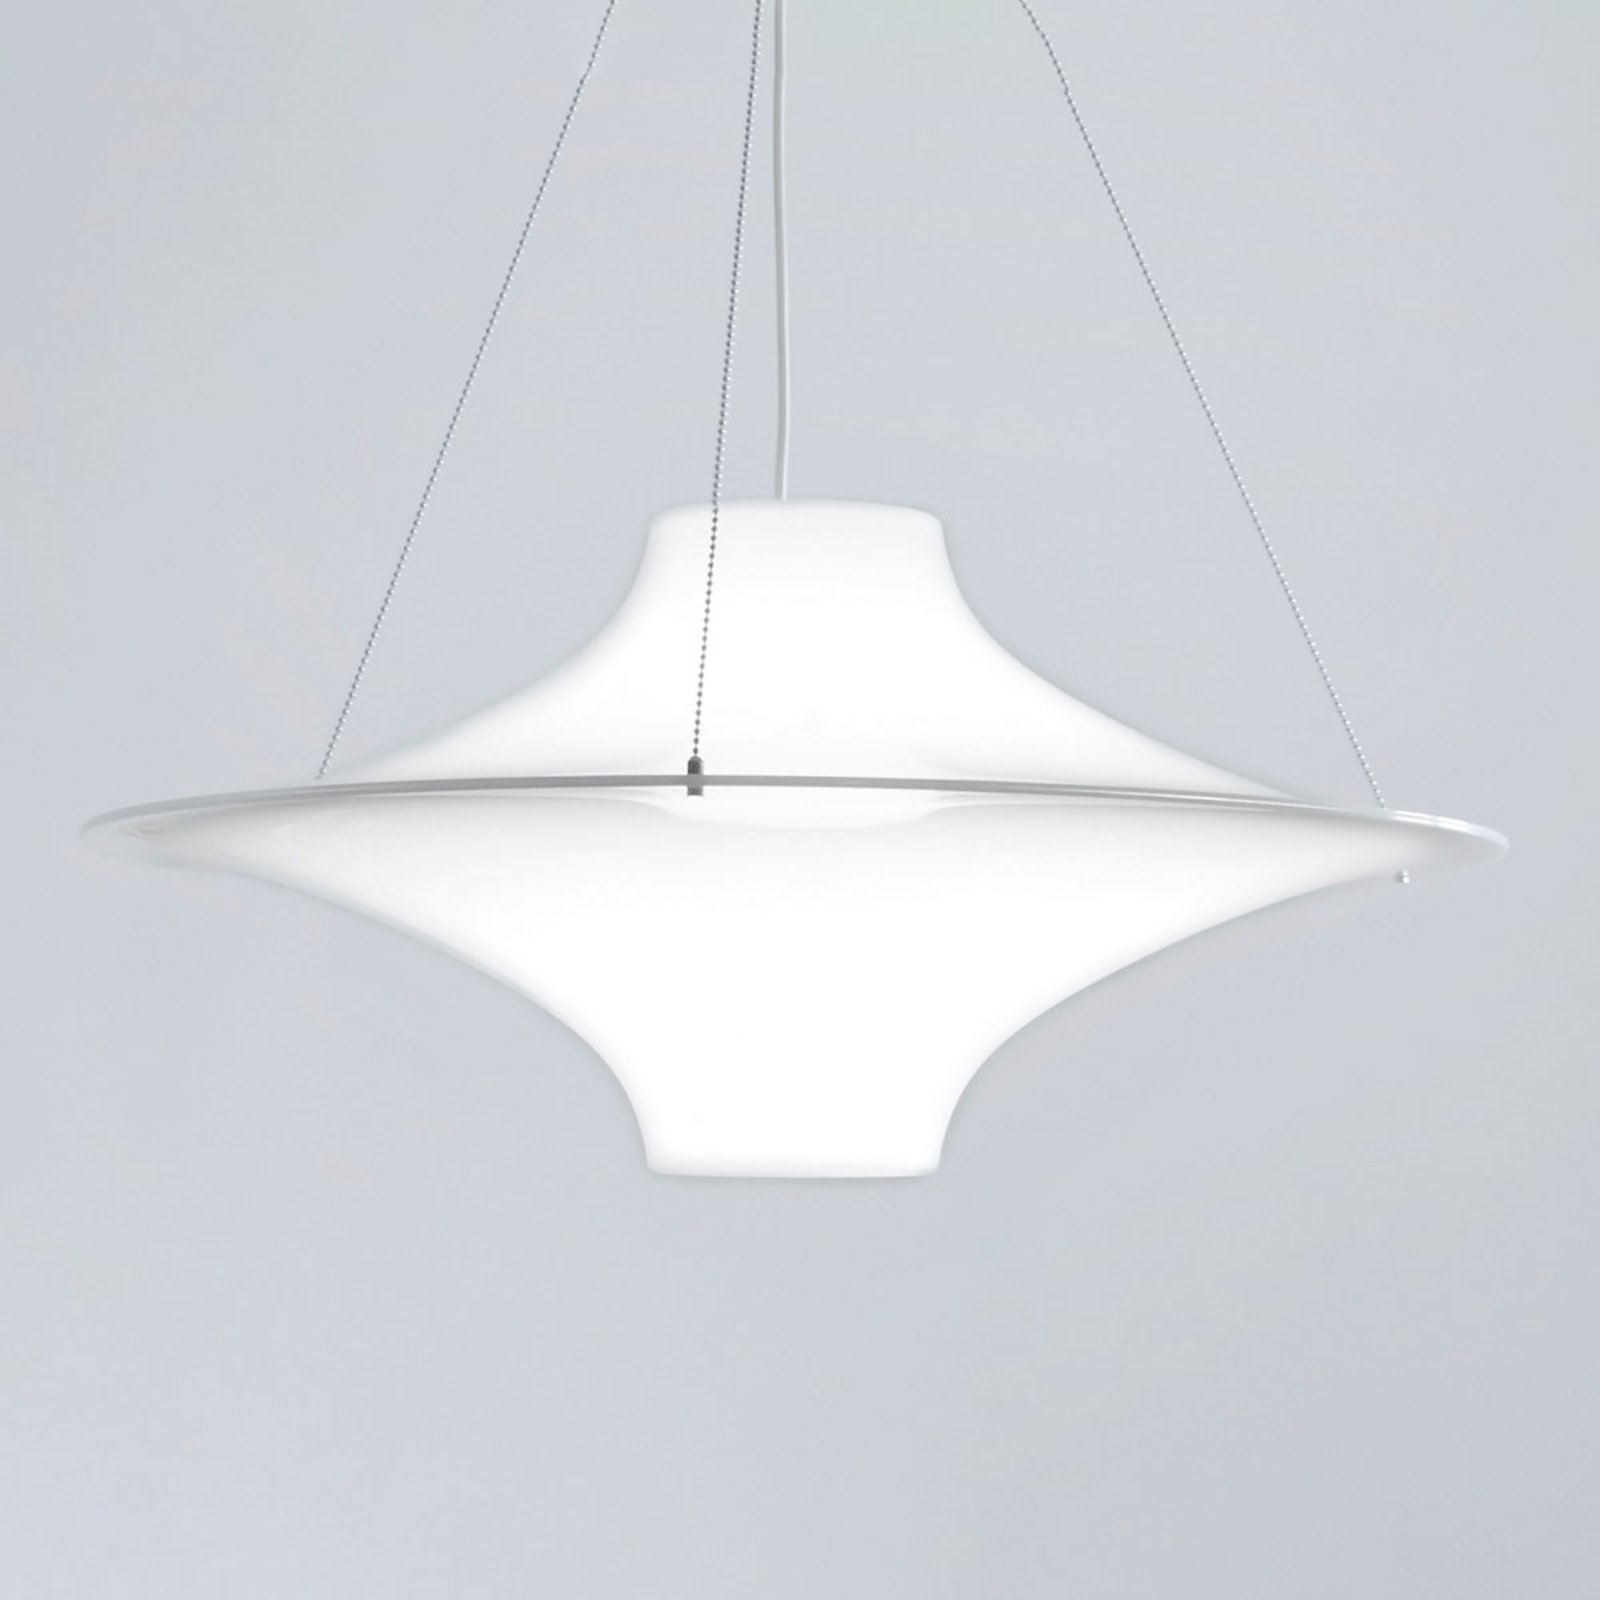 Innolux Lokki dizajnérska závesná lampa, 70 cm